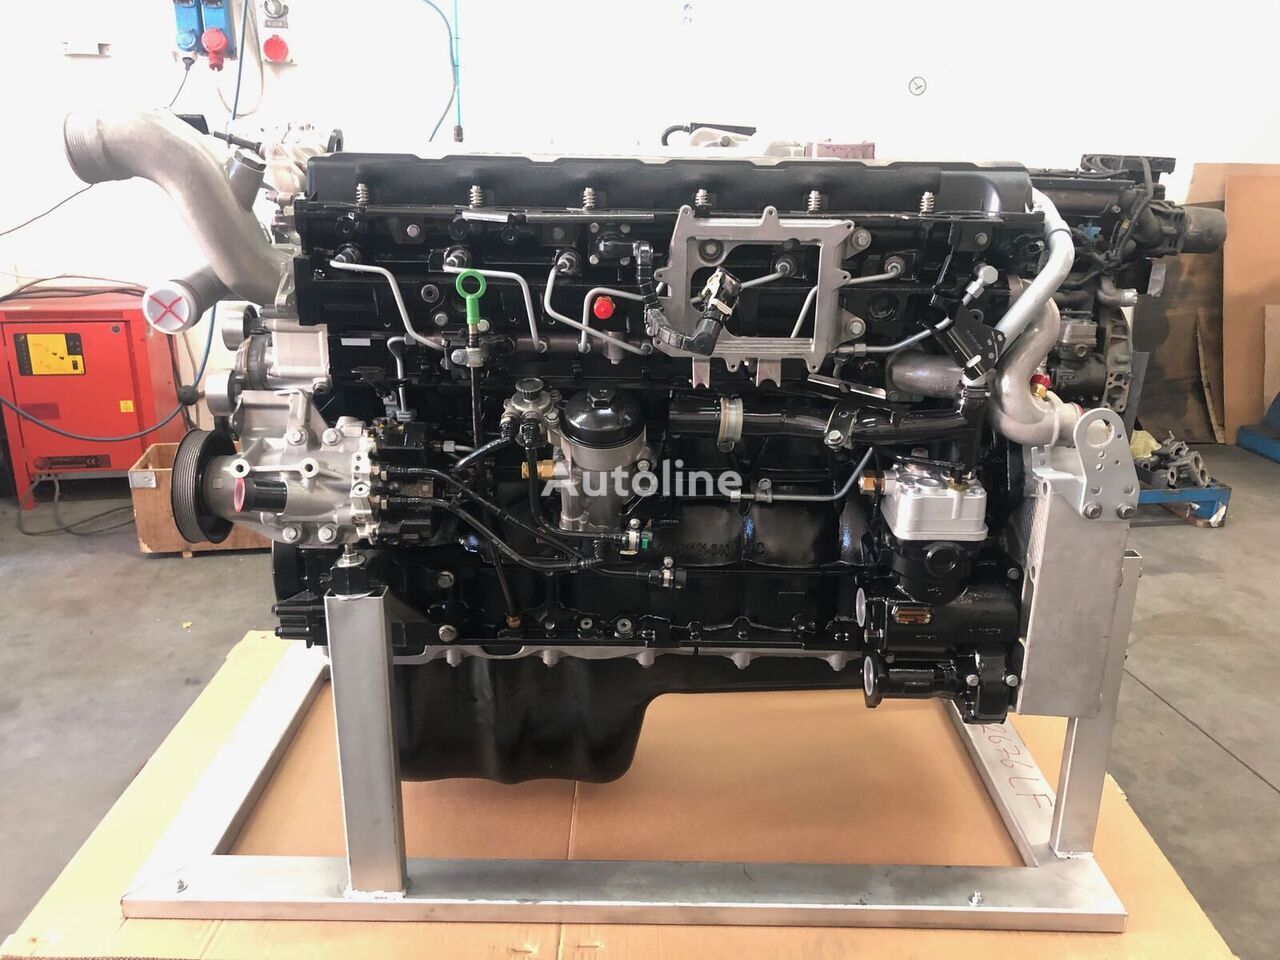 Motor pro Nákladní auto MAN D2676LF05: obrázek 14